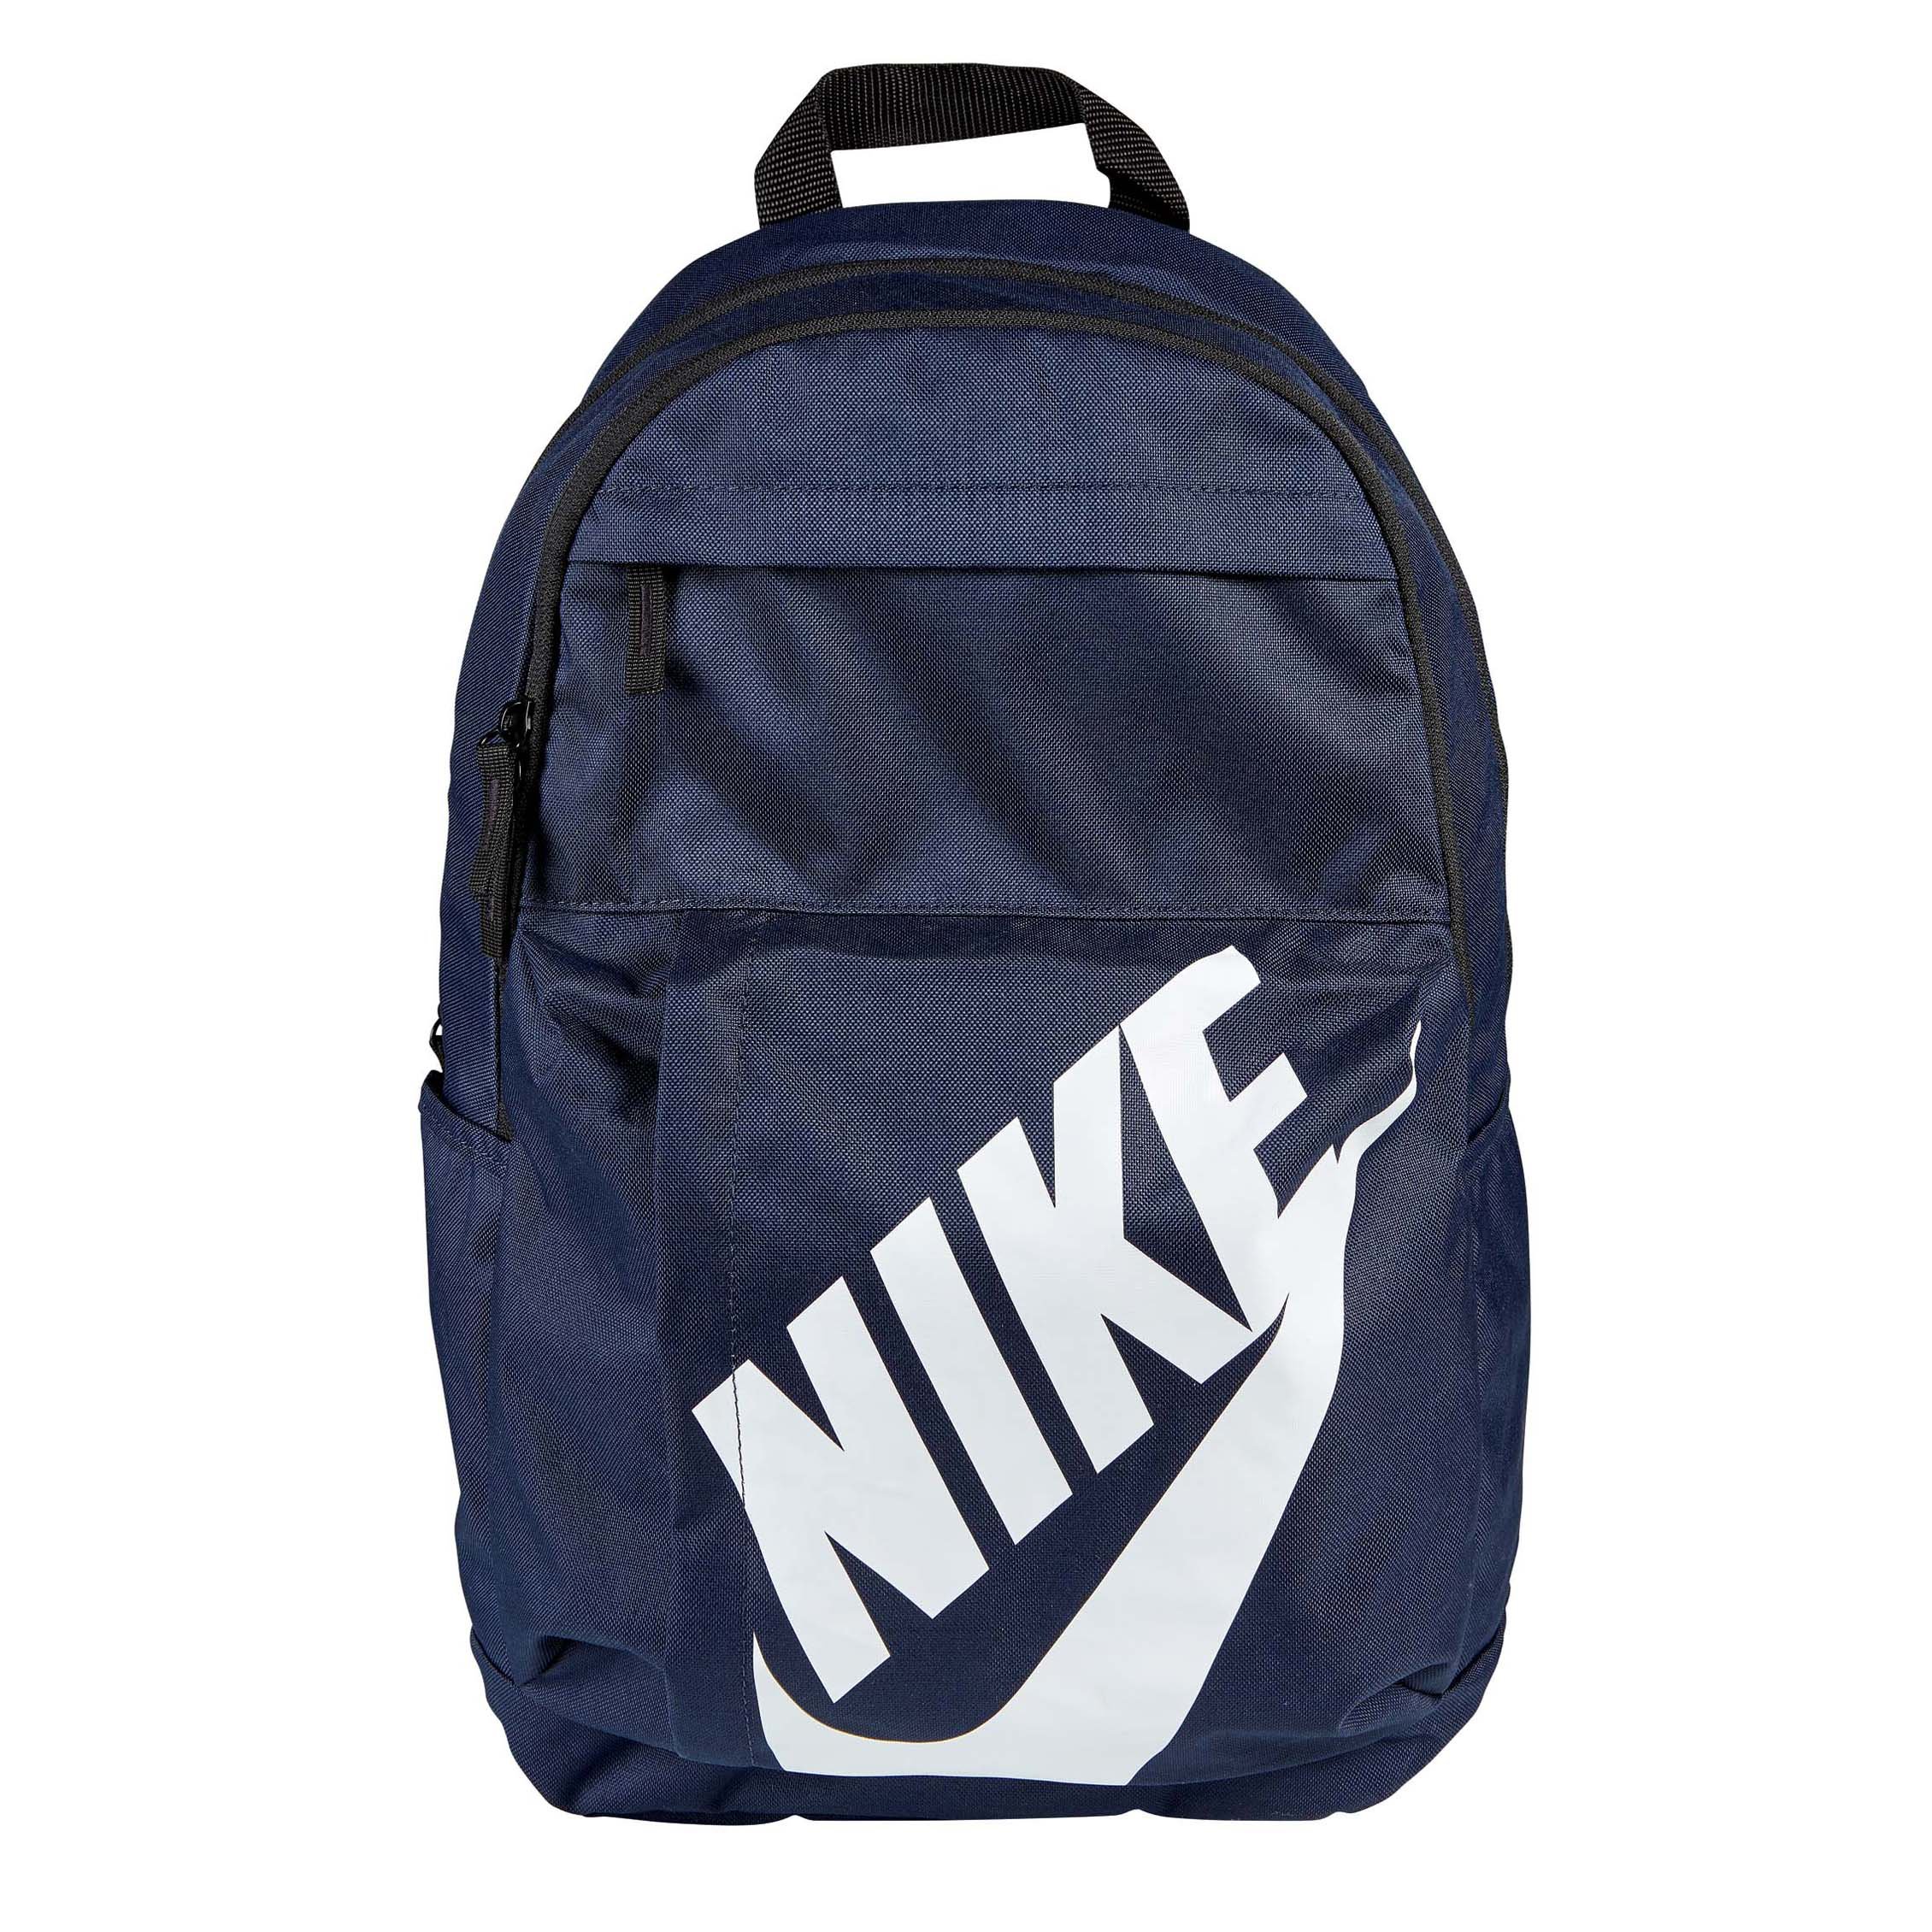 nike blue backpack